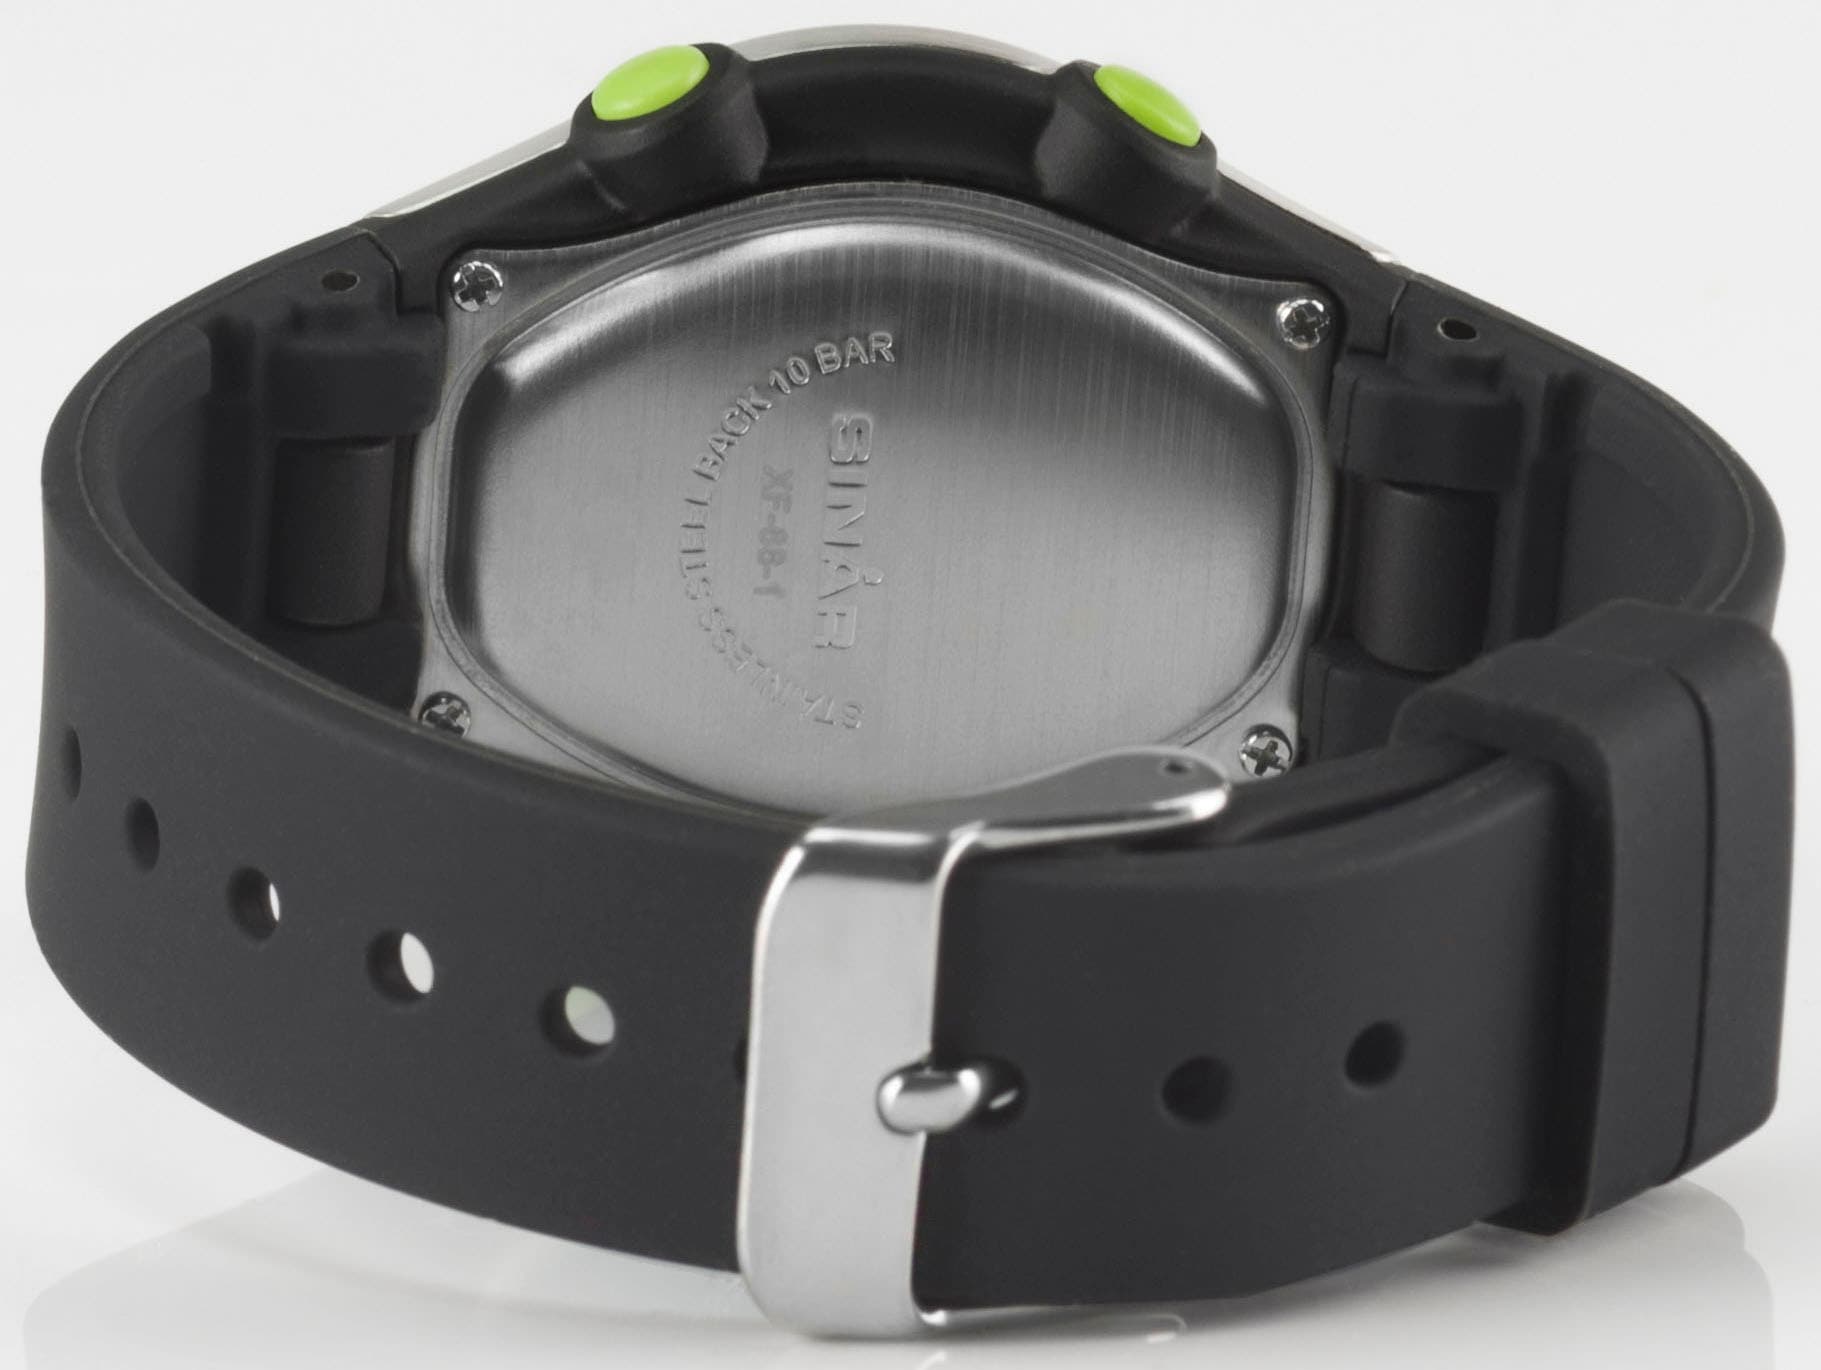 SINAR Quarzuhr »XF-68-1«, Armbanduhr, Kinderuhr, digital, Datum, ideal auch als Geschenk